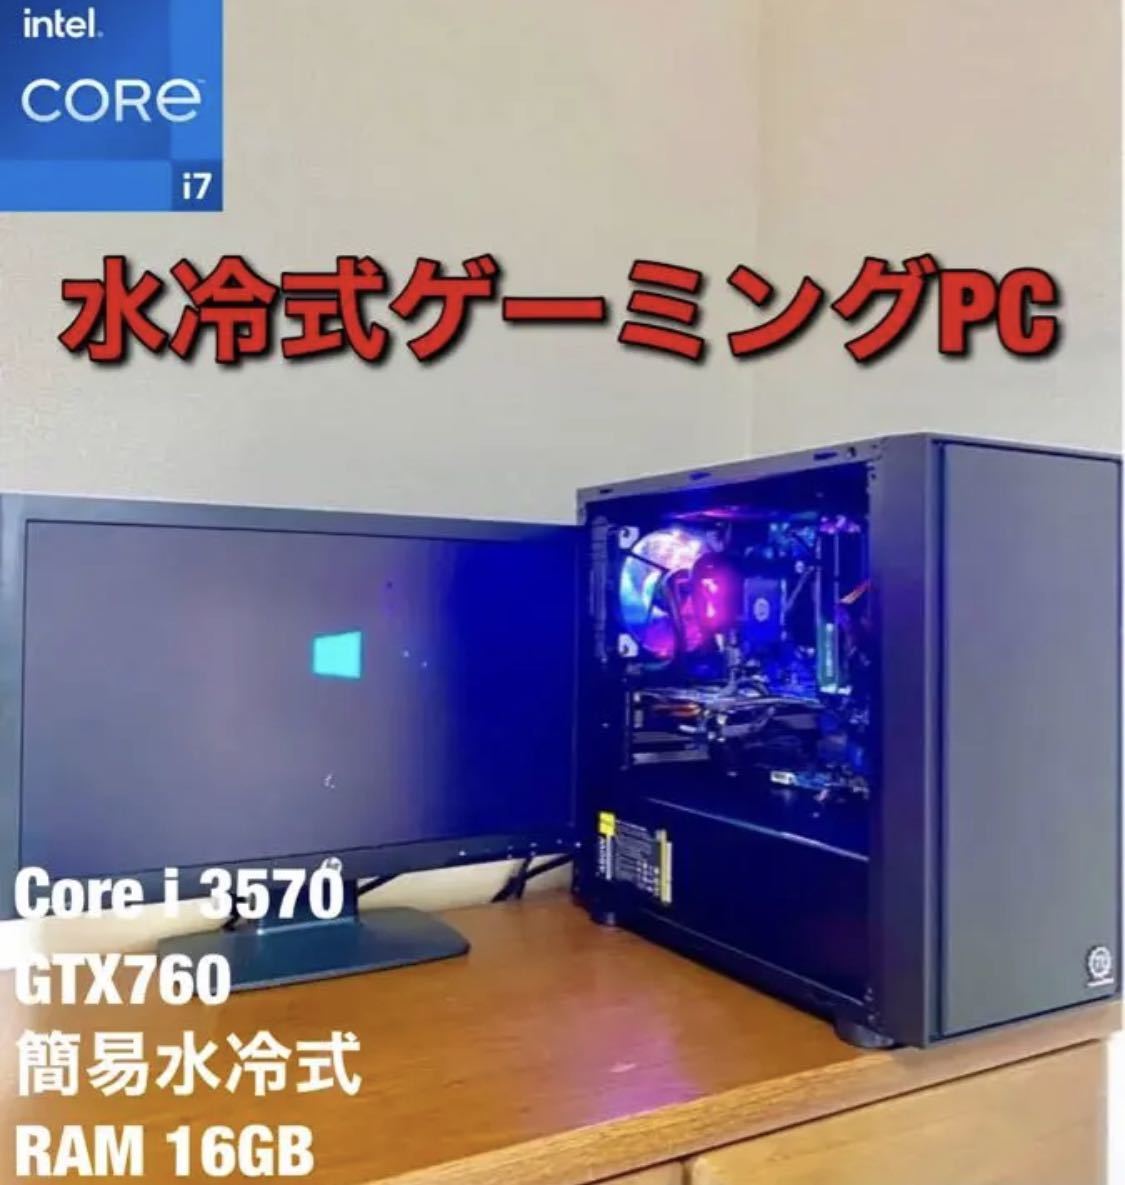 大人気商品 水冷式ゲーミングPCセット Core i5 3570 GTX 760 16GB